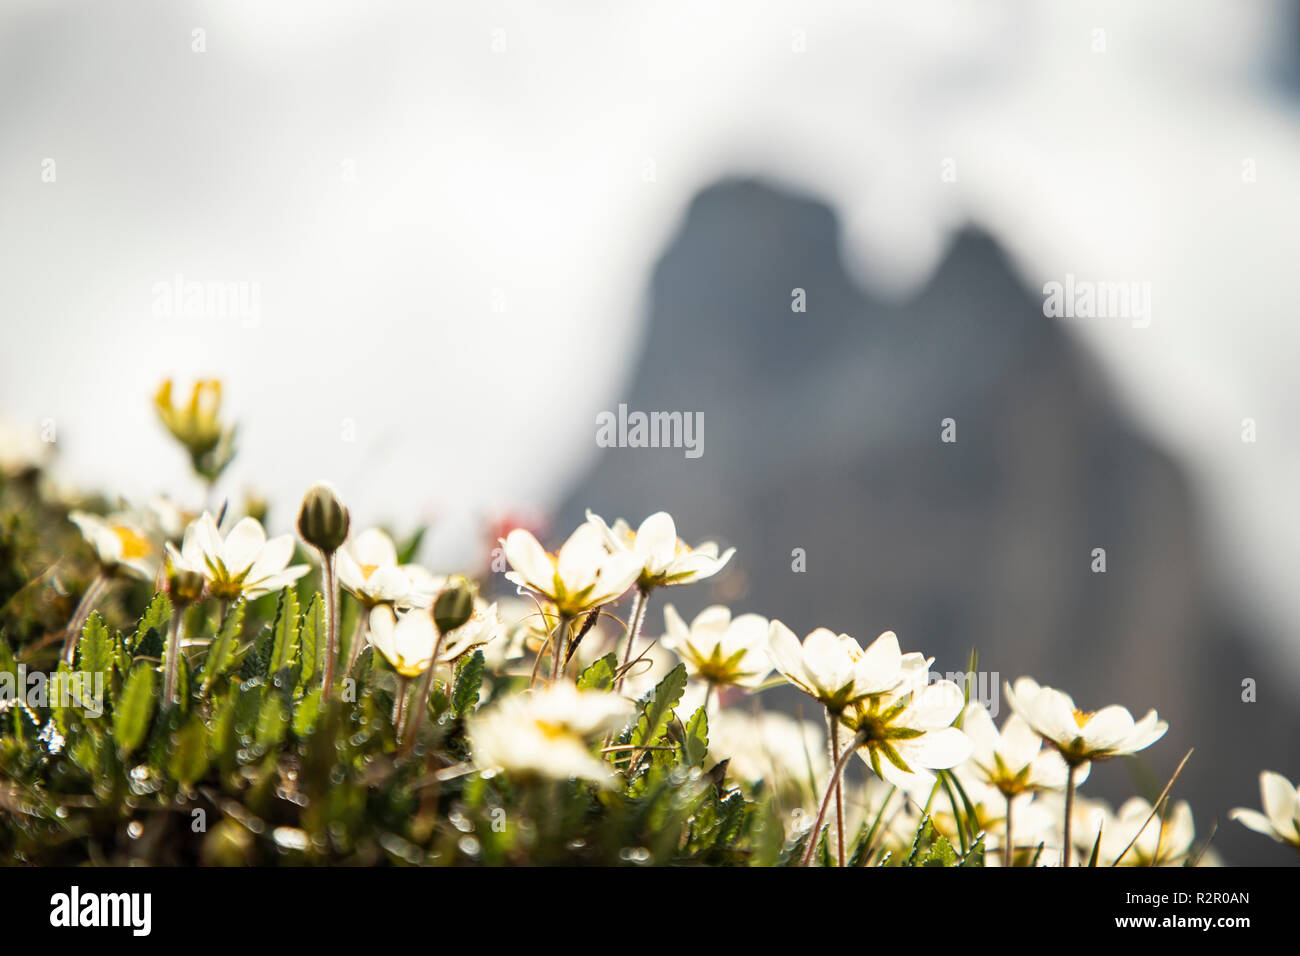 Italy, Dolomites, Hochpustertal Valley, Naturpark Drei Zinnen (Three Peaks of Lavaredo Nature Park), Alpine flowers Stock Photo